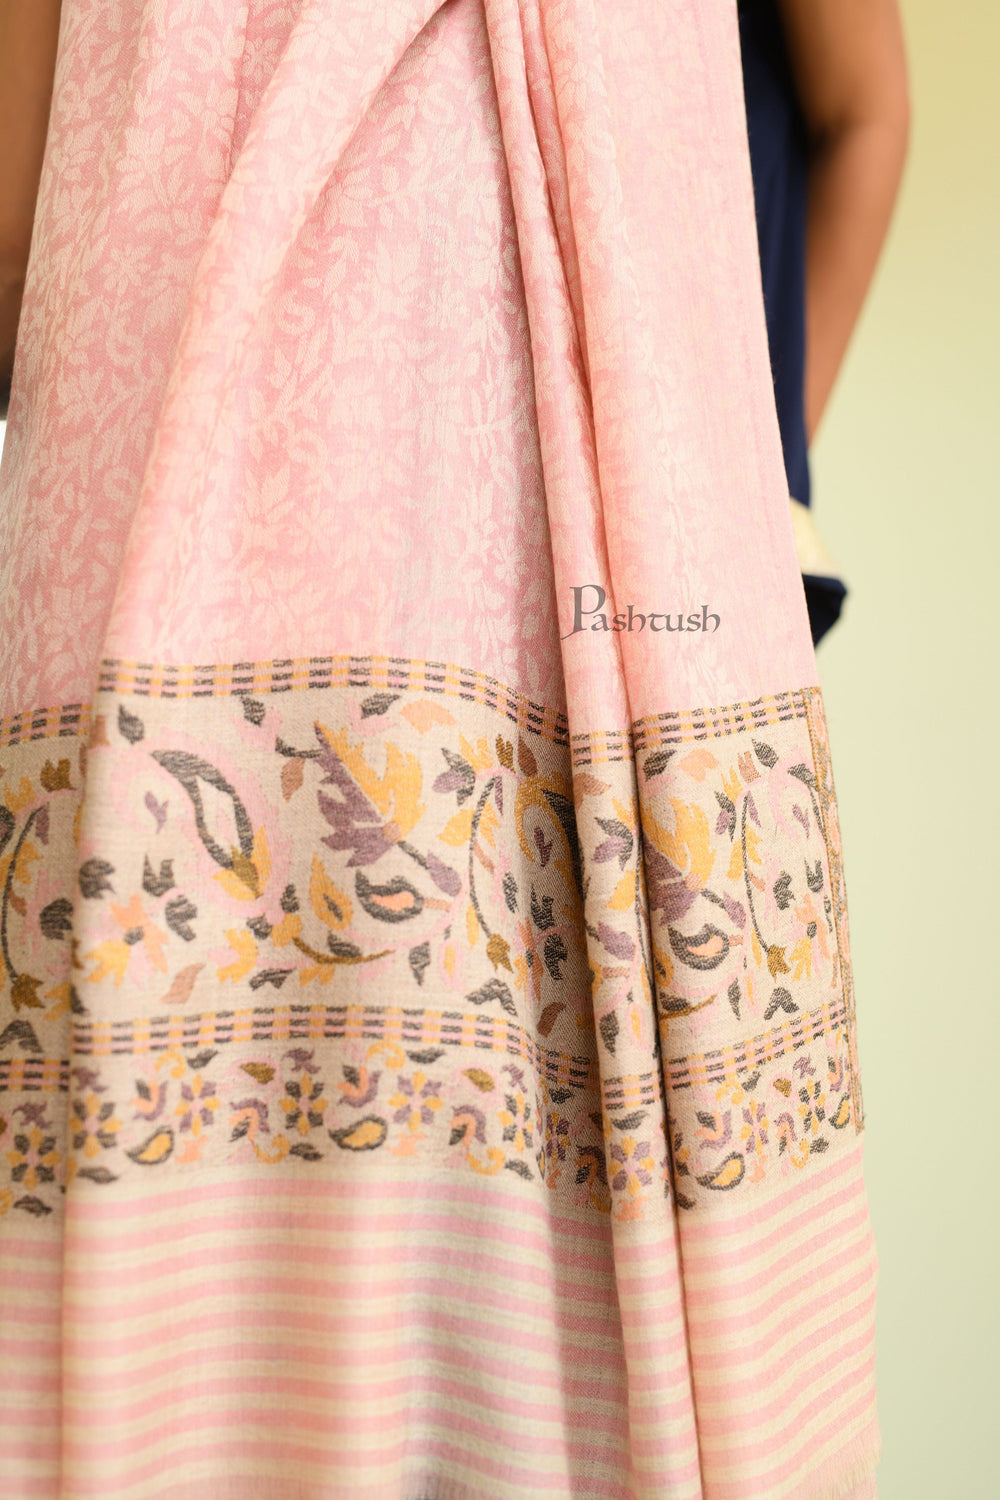 Pashwool Womens Shawls Pashtush Womens Extra Fine Wool Shawl, Paisley Palla Woven Design, Light Pink